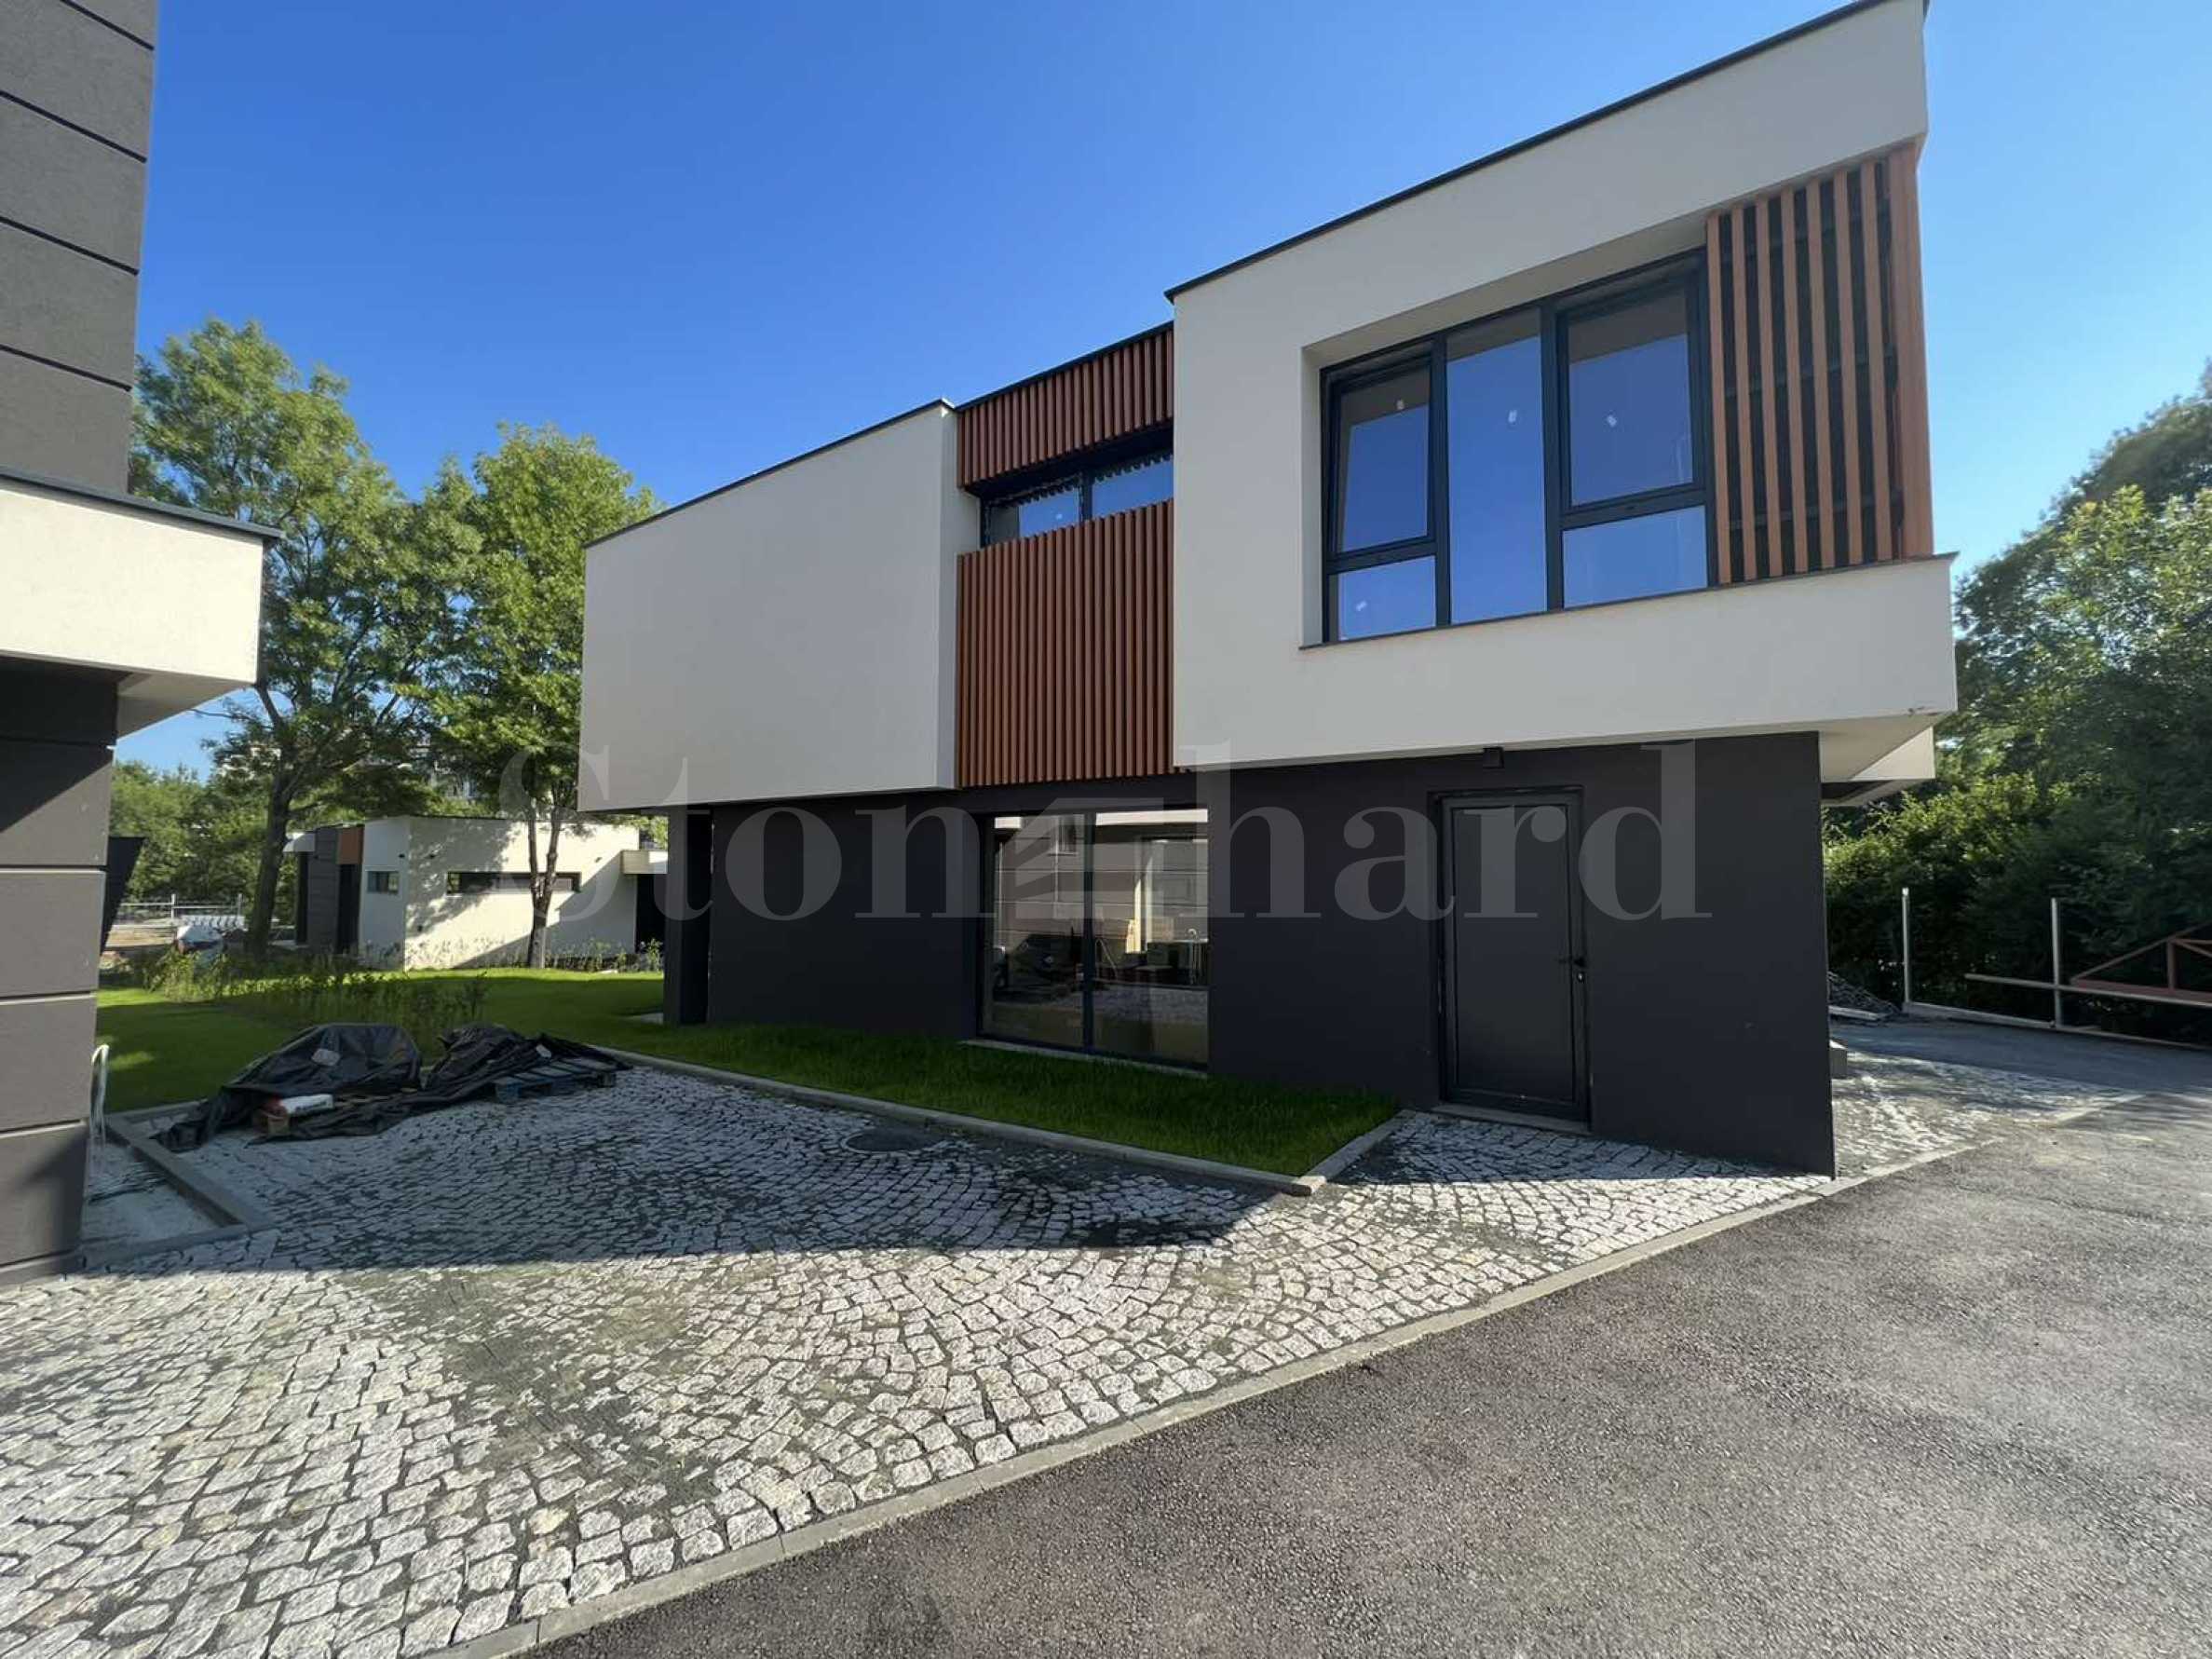 Ново поколение модерни къщи с Акт 16 на плажа1 - Stonehard